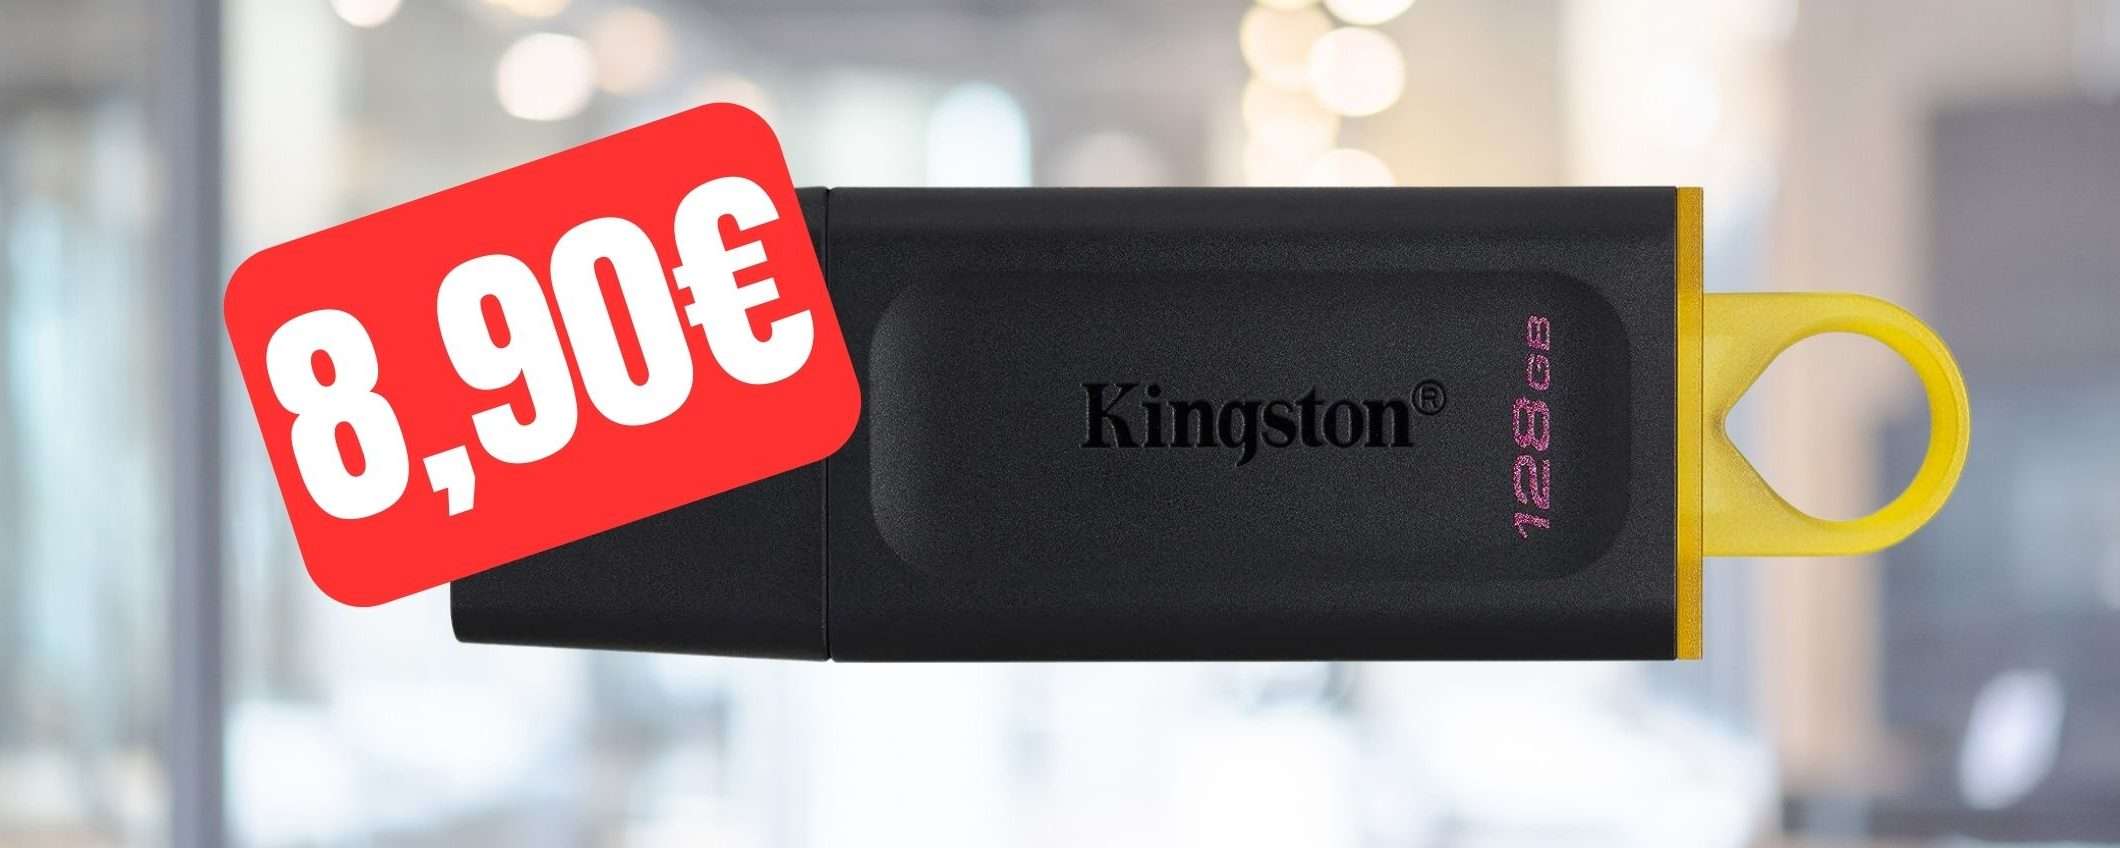 Pen Drive Kingston 128GB a prezzo STRACCIATO su Amazon